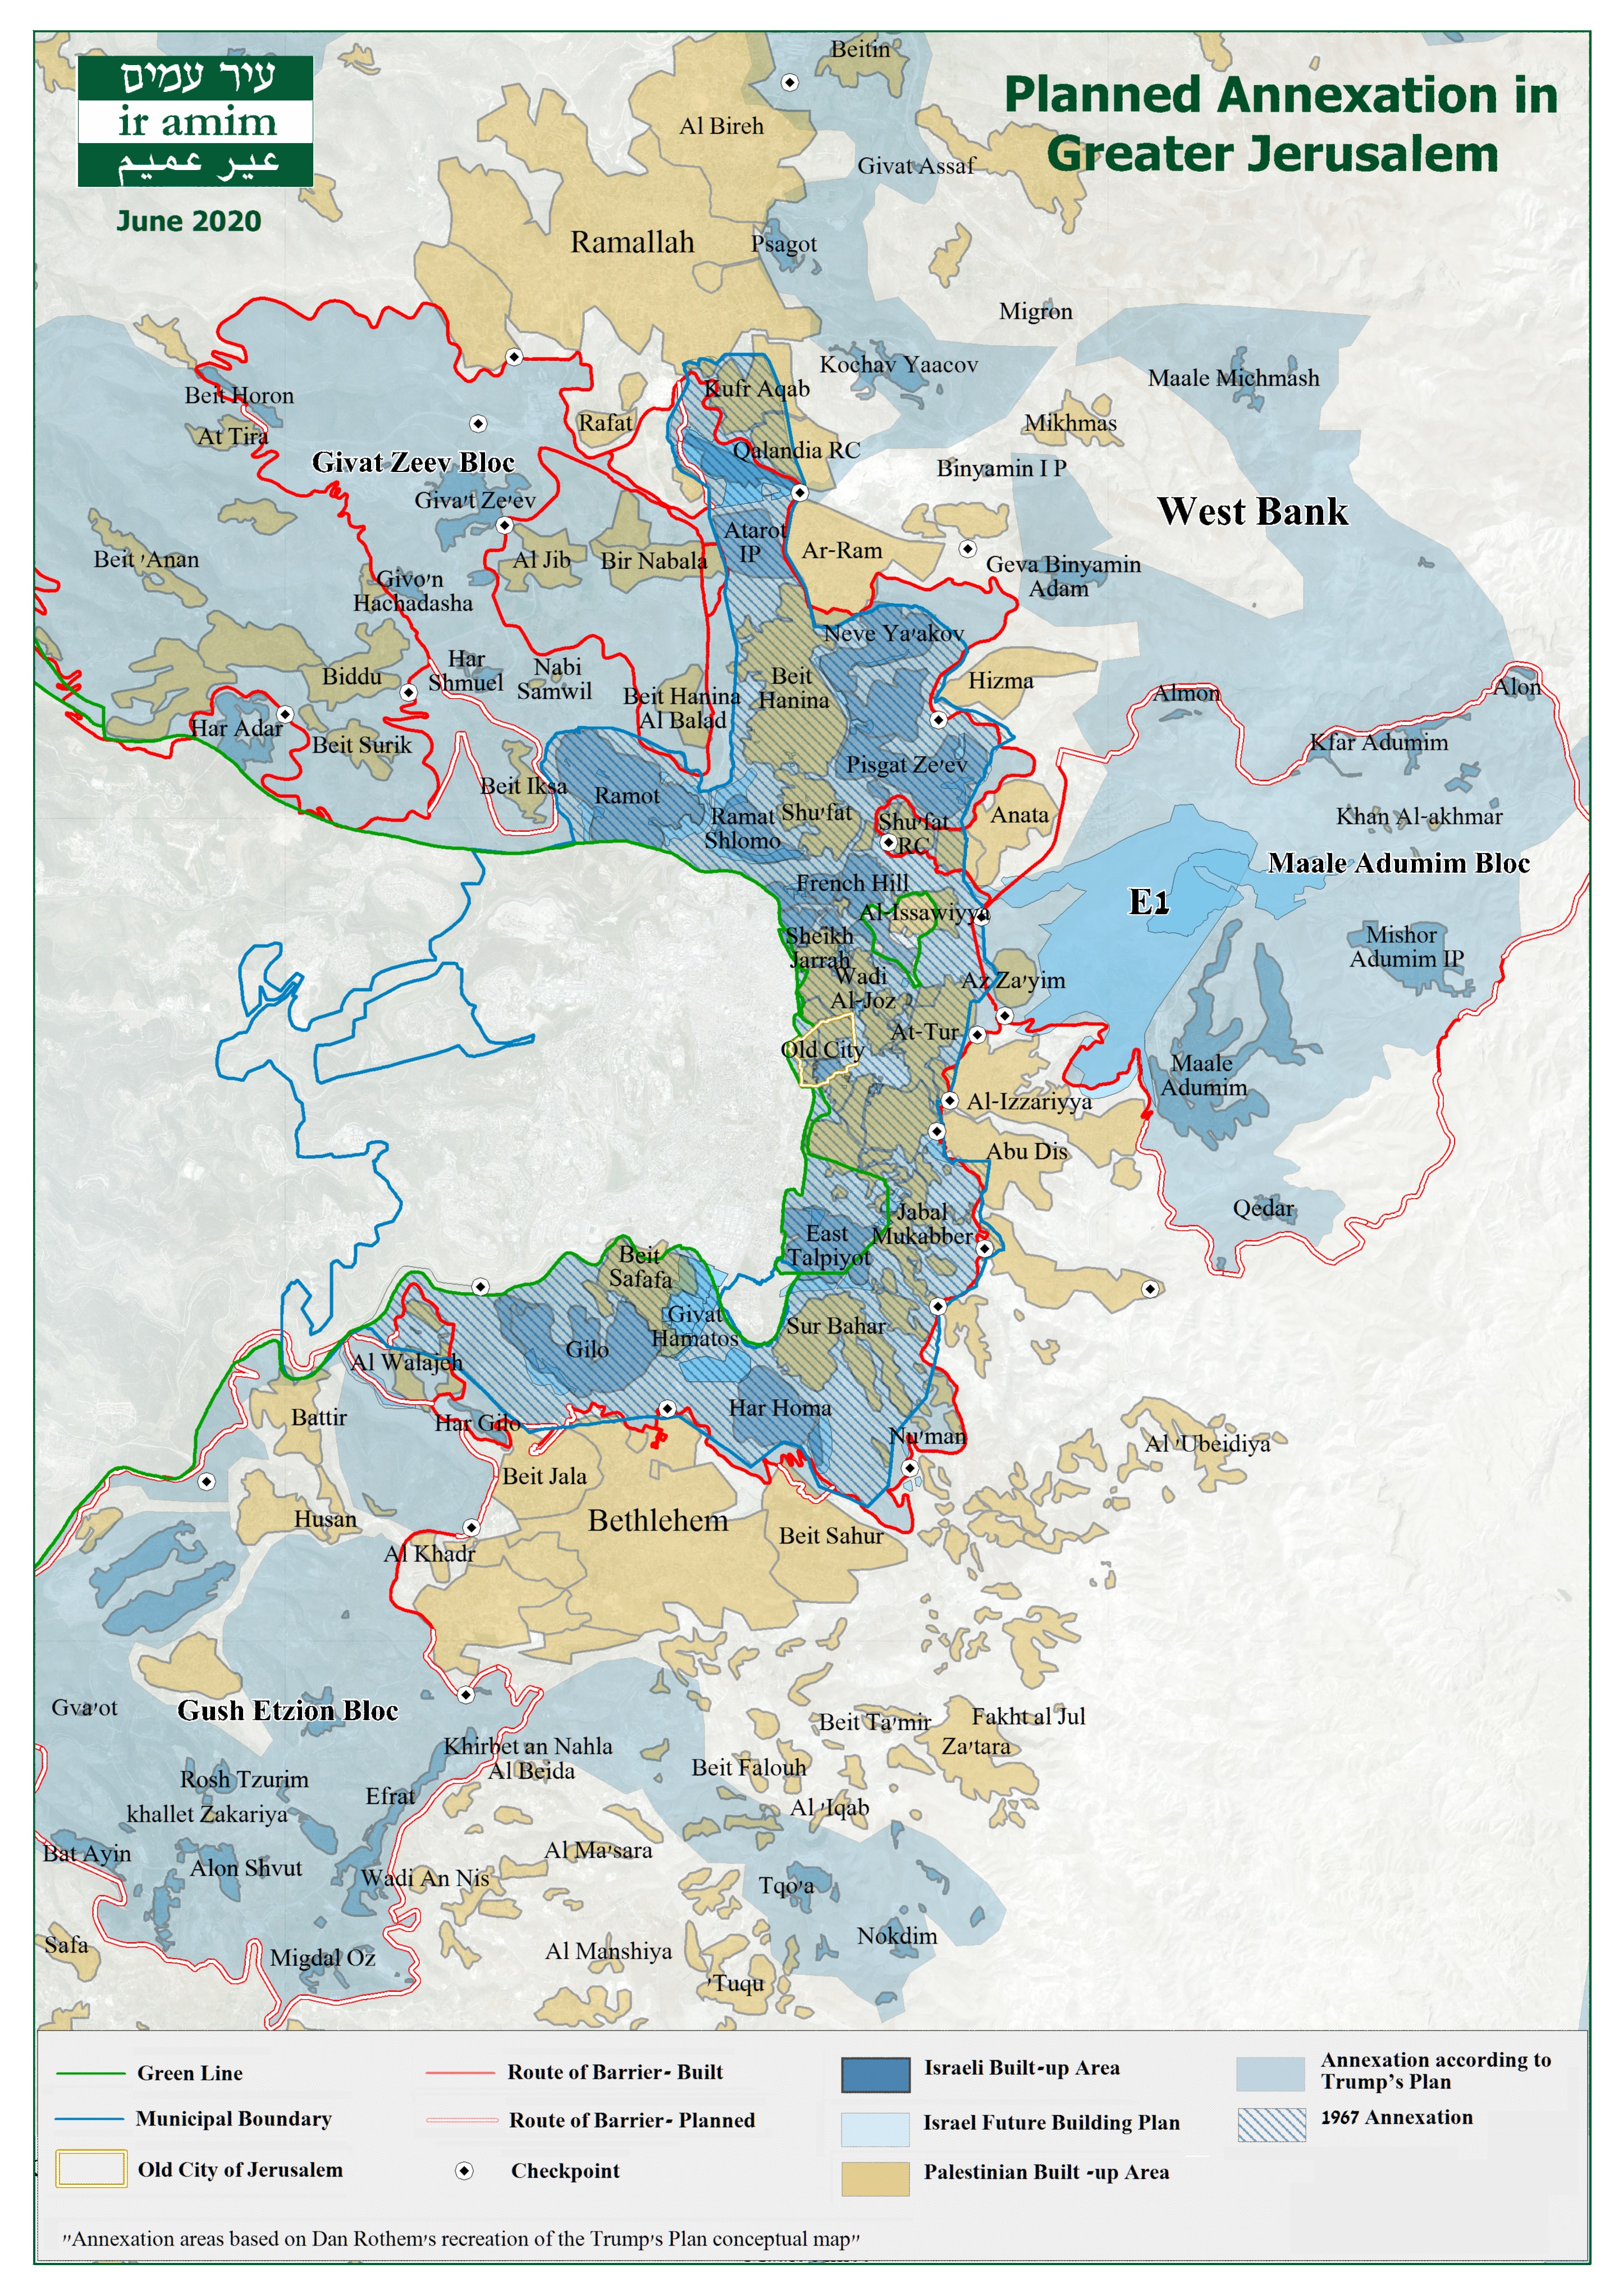 Carte (Ir Amim, juin 2020) : L'annexion prévue afin de constituer un Grand Jérusalem